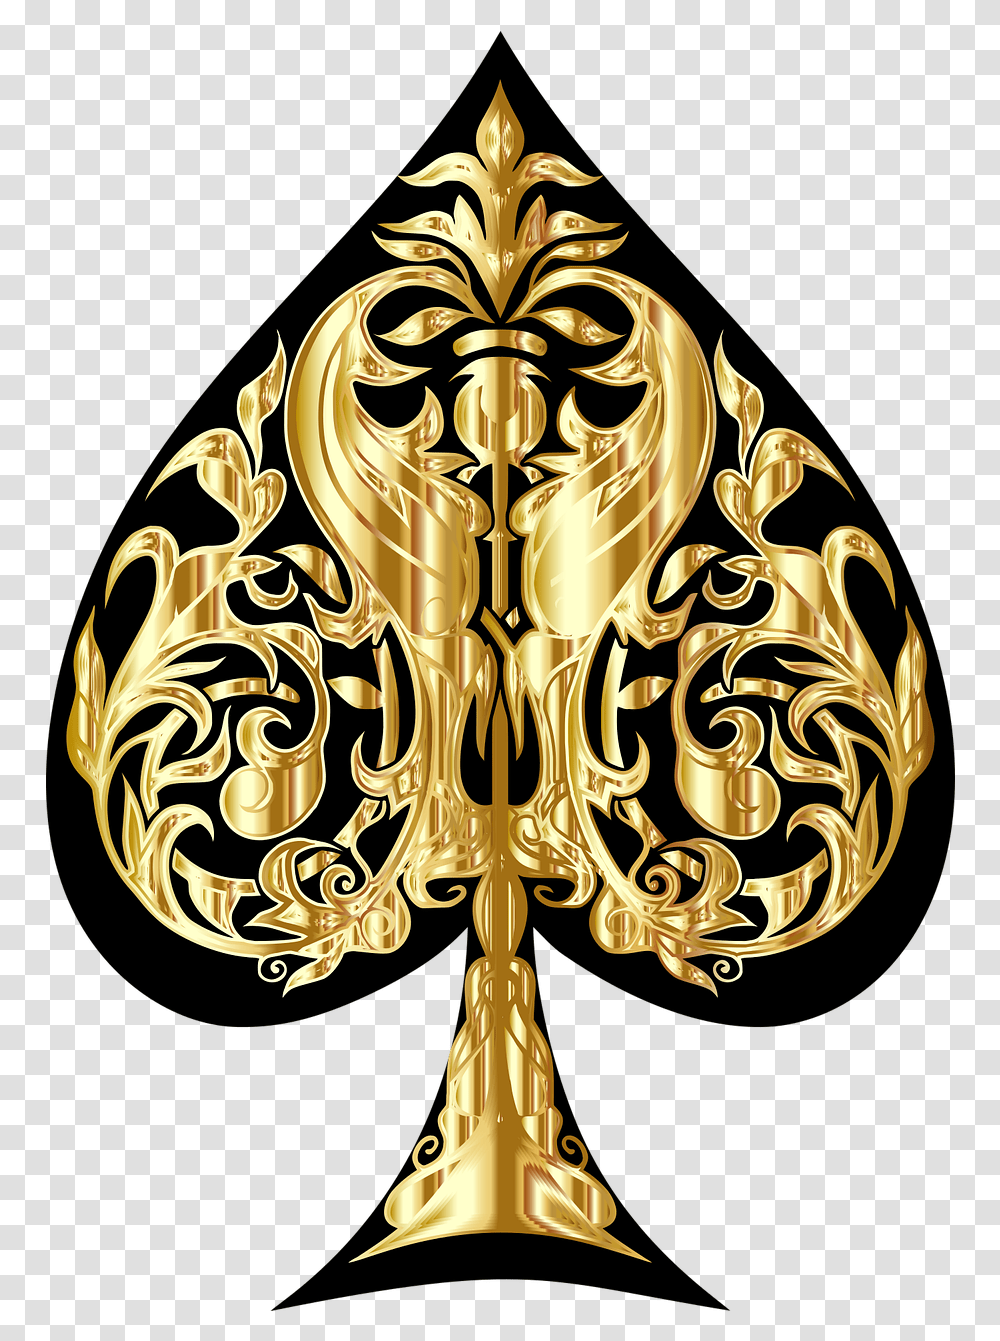 Ace Of Spades Cards Game Gold Design Gold Ace Of Spades Logo, Symbol, Emblem, Chandelier, Lamp Transparent Png